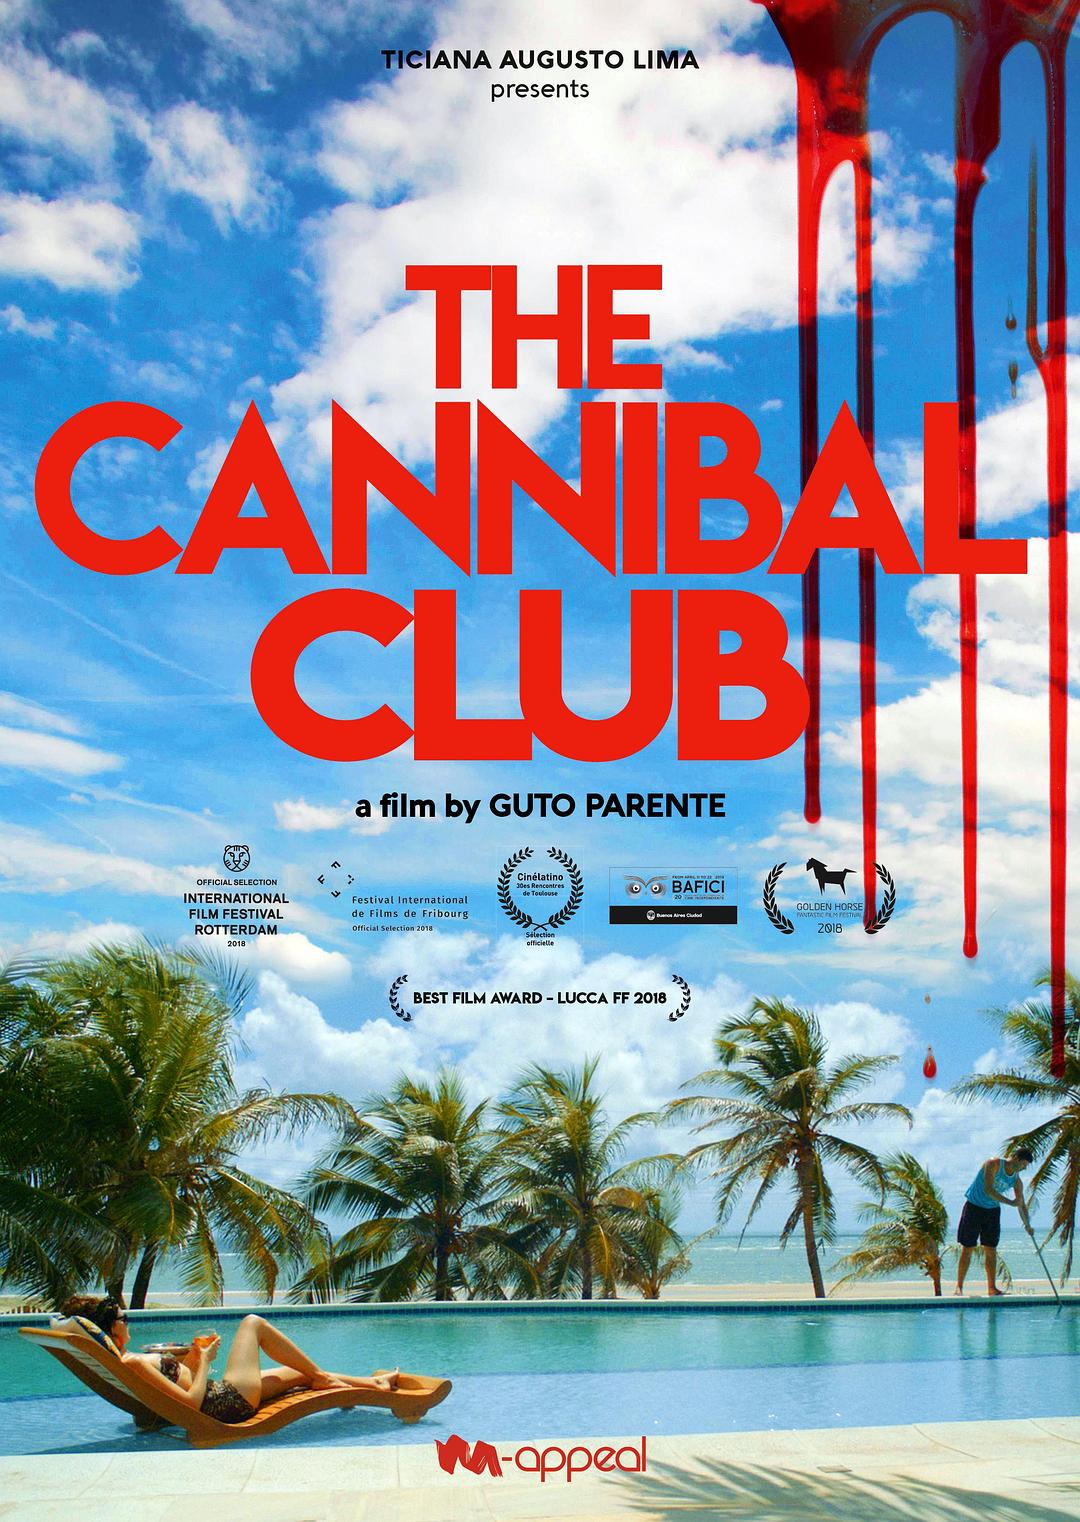 食人俱乐部 The.Cannibal.Club.2018.PORTUGUESE.1080p.BluRay.x264.DTS-FGT 7.33GB-1.png